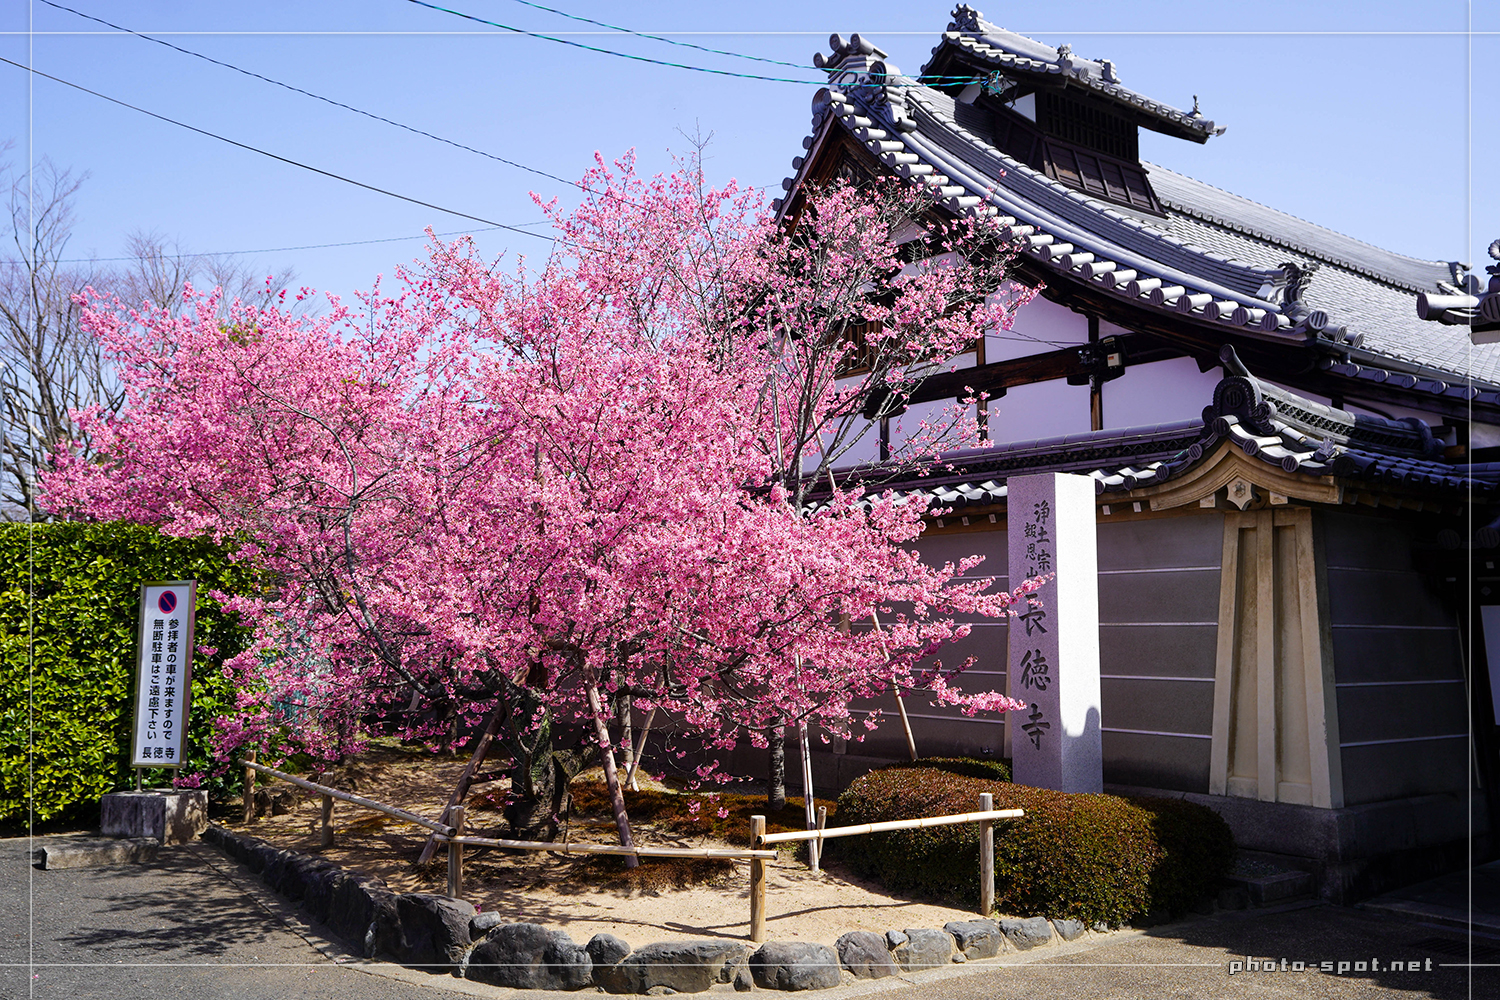 出町柳の長徳寺に咲く早咲きのおかめ桜